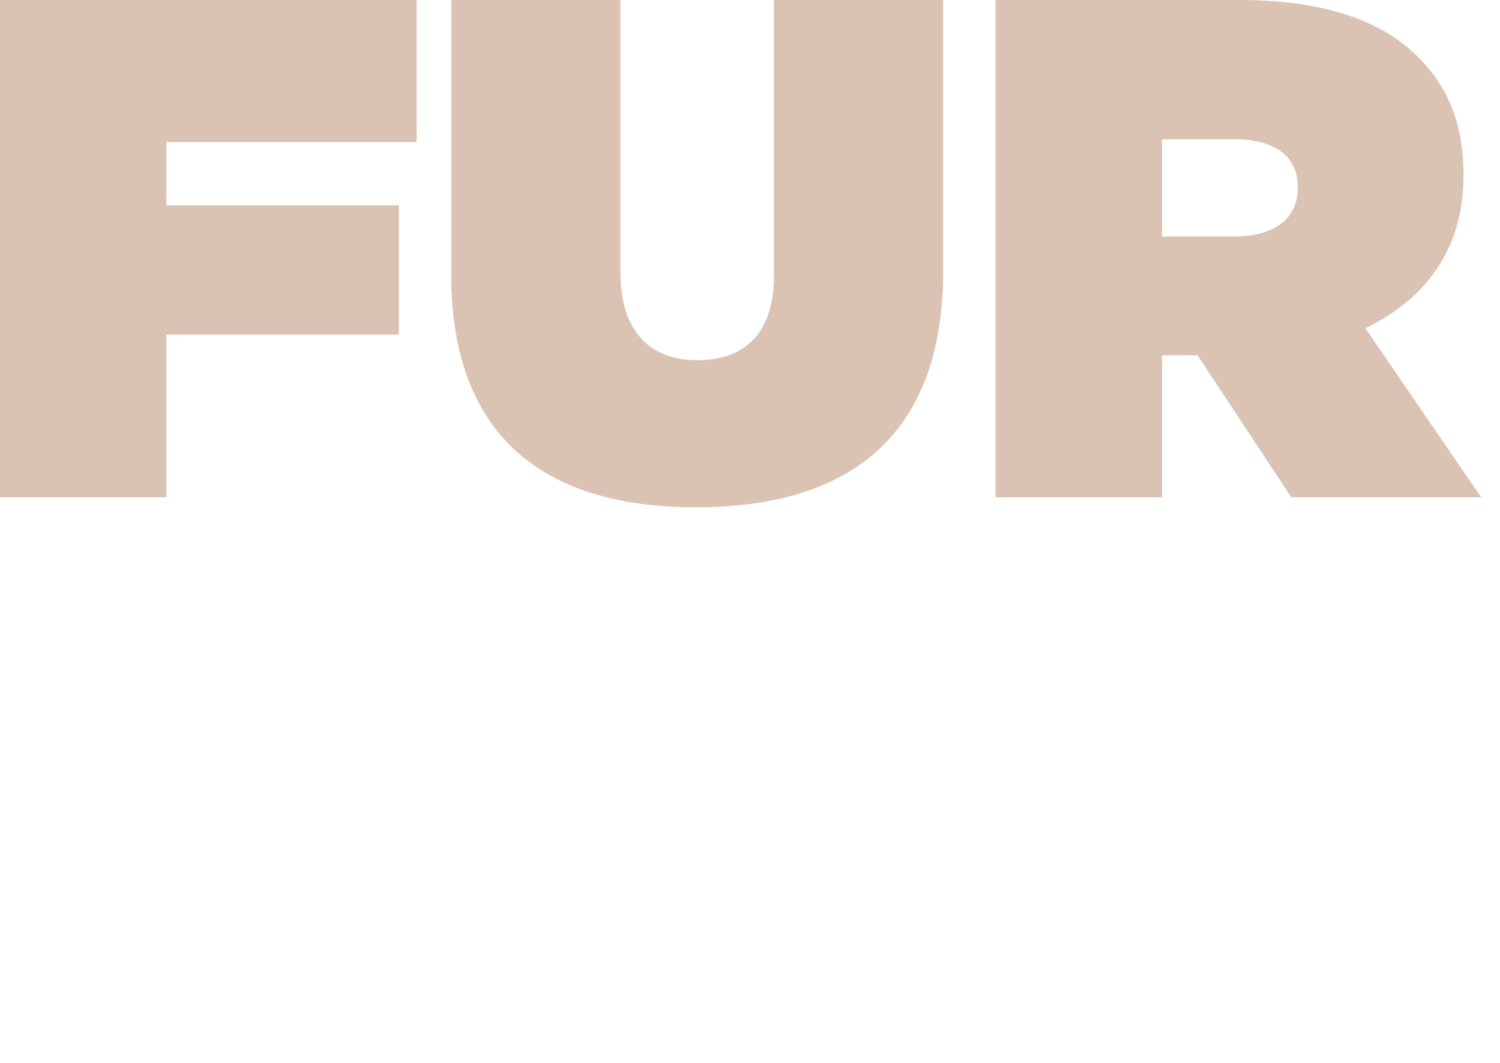    furbae